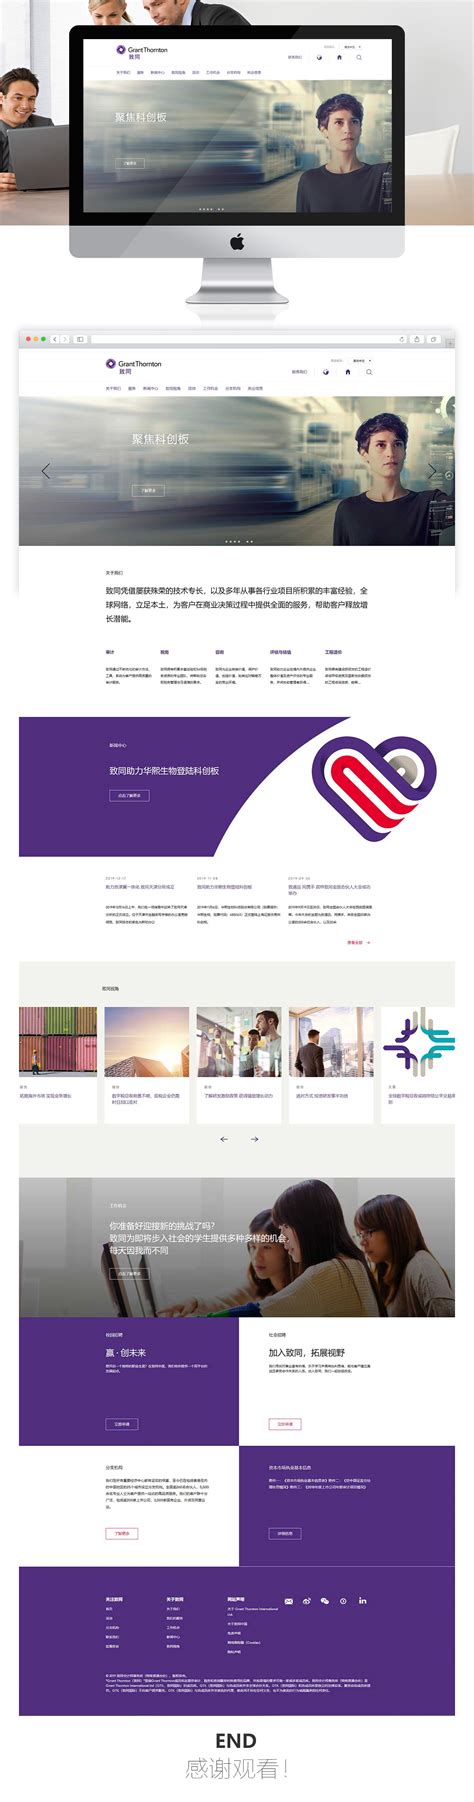 中国影响力网站设计 - 北京网站建设|北京网站制作|北京网站设计|千助